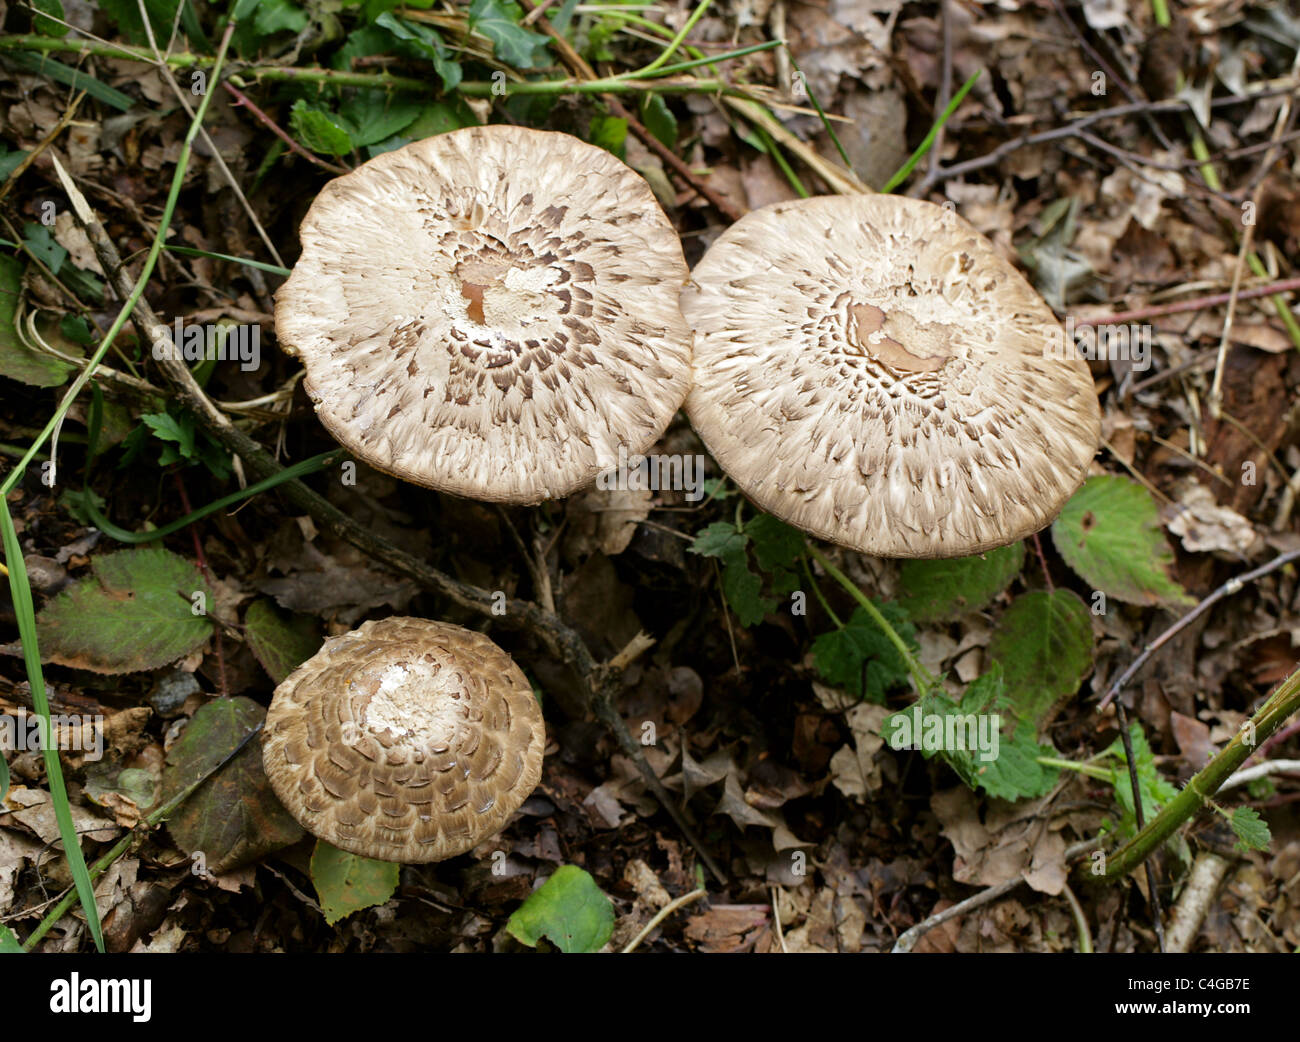 Shaggy Parasol Mushroom, Chlorophyllum rhacodes, Agaricaceae Stock Photo